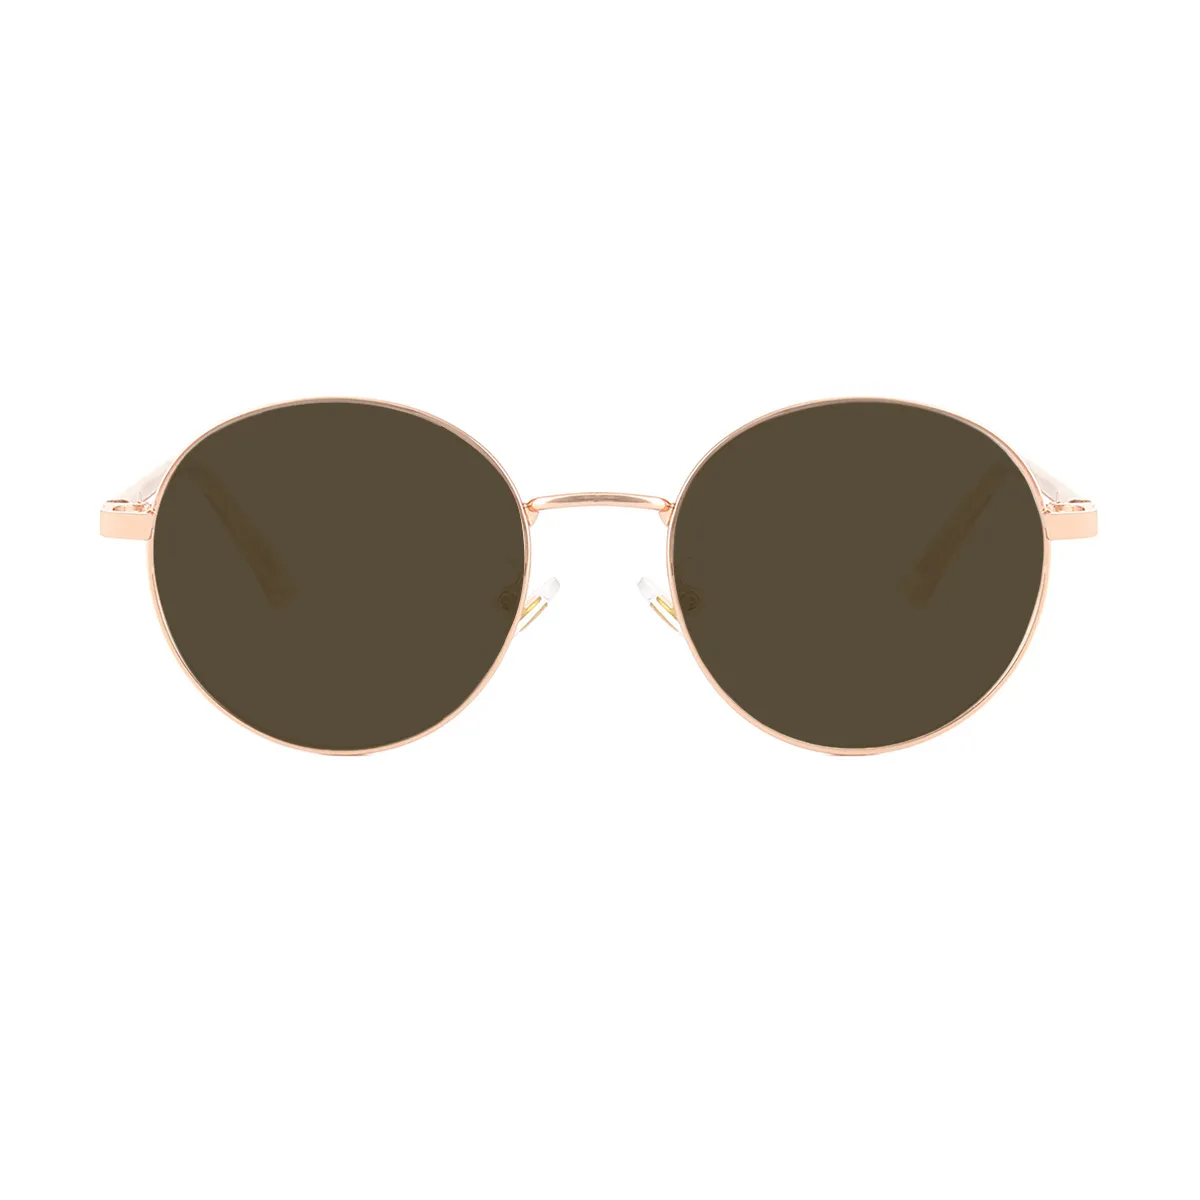 Classic Round Black-Silver  Sunglasses for Women & Men